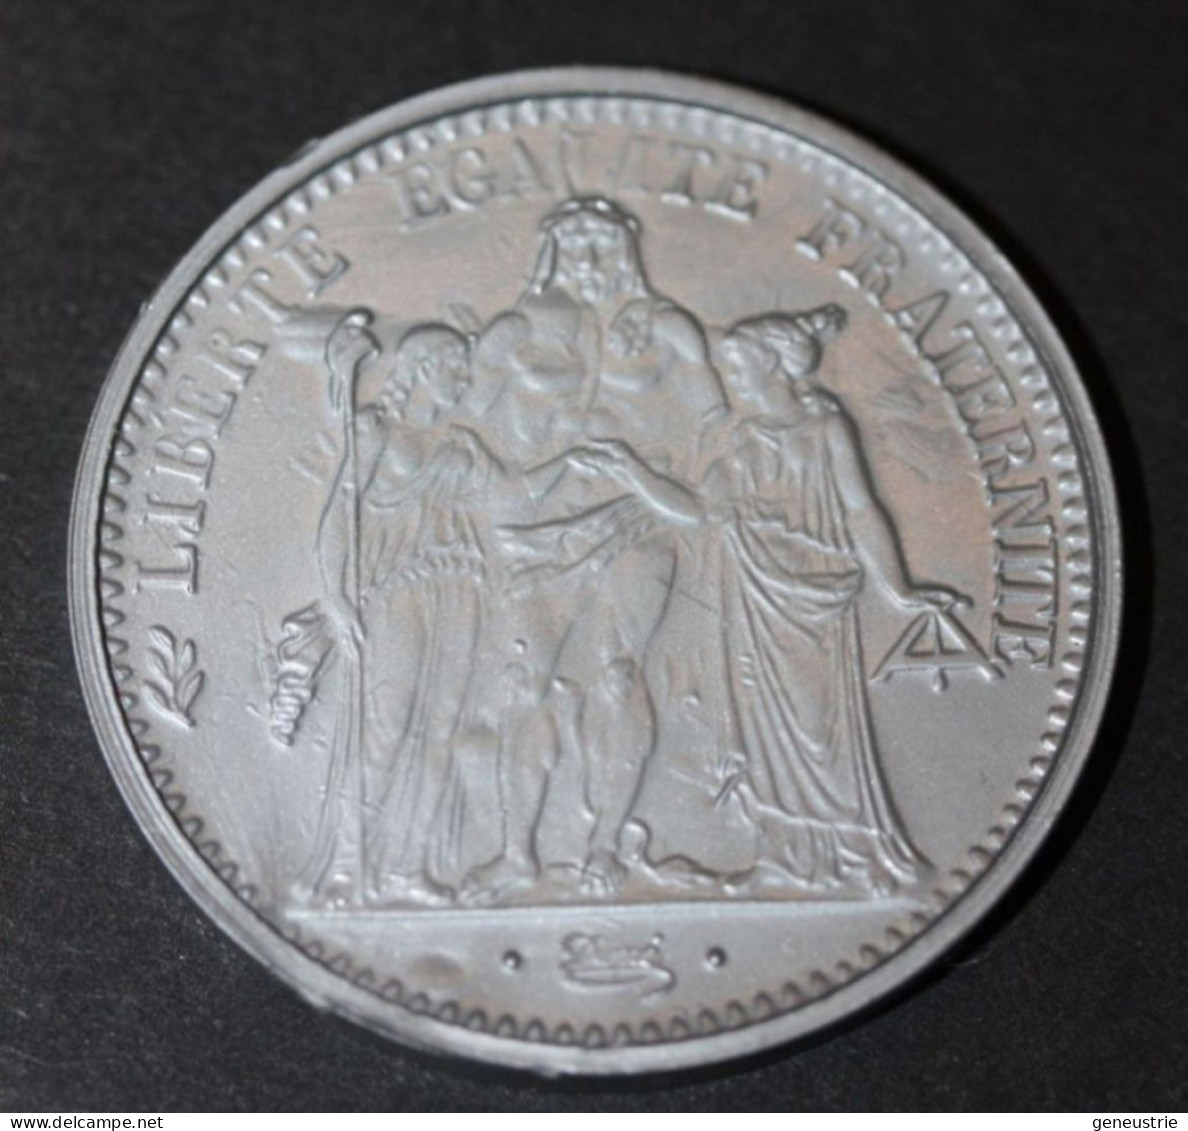 Pièce De 10 Francs Type Hercule 1965 - Jeton Plastique école En Francs Années 60 - Coins School Token - Professionals/Firms